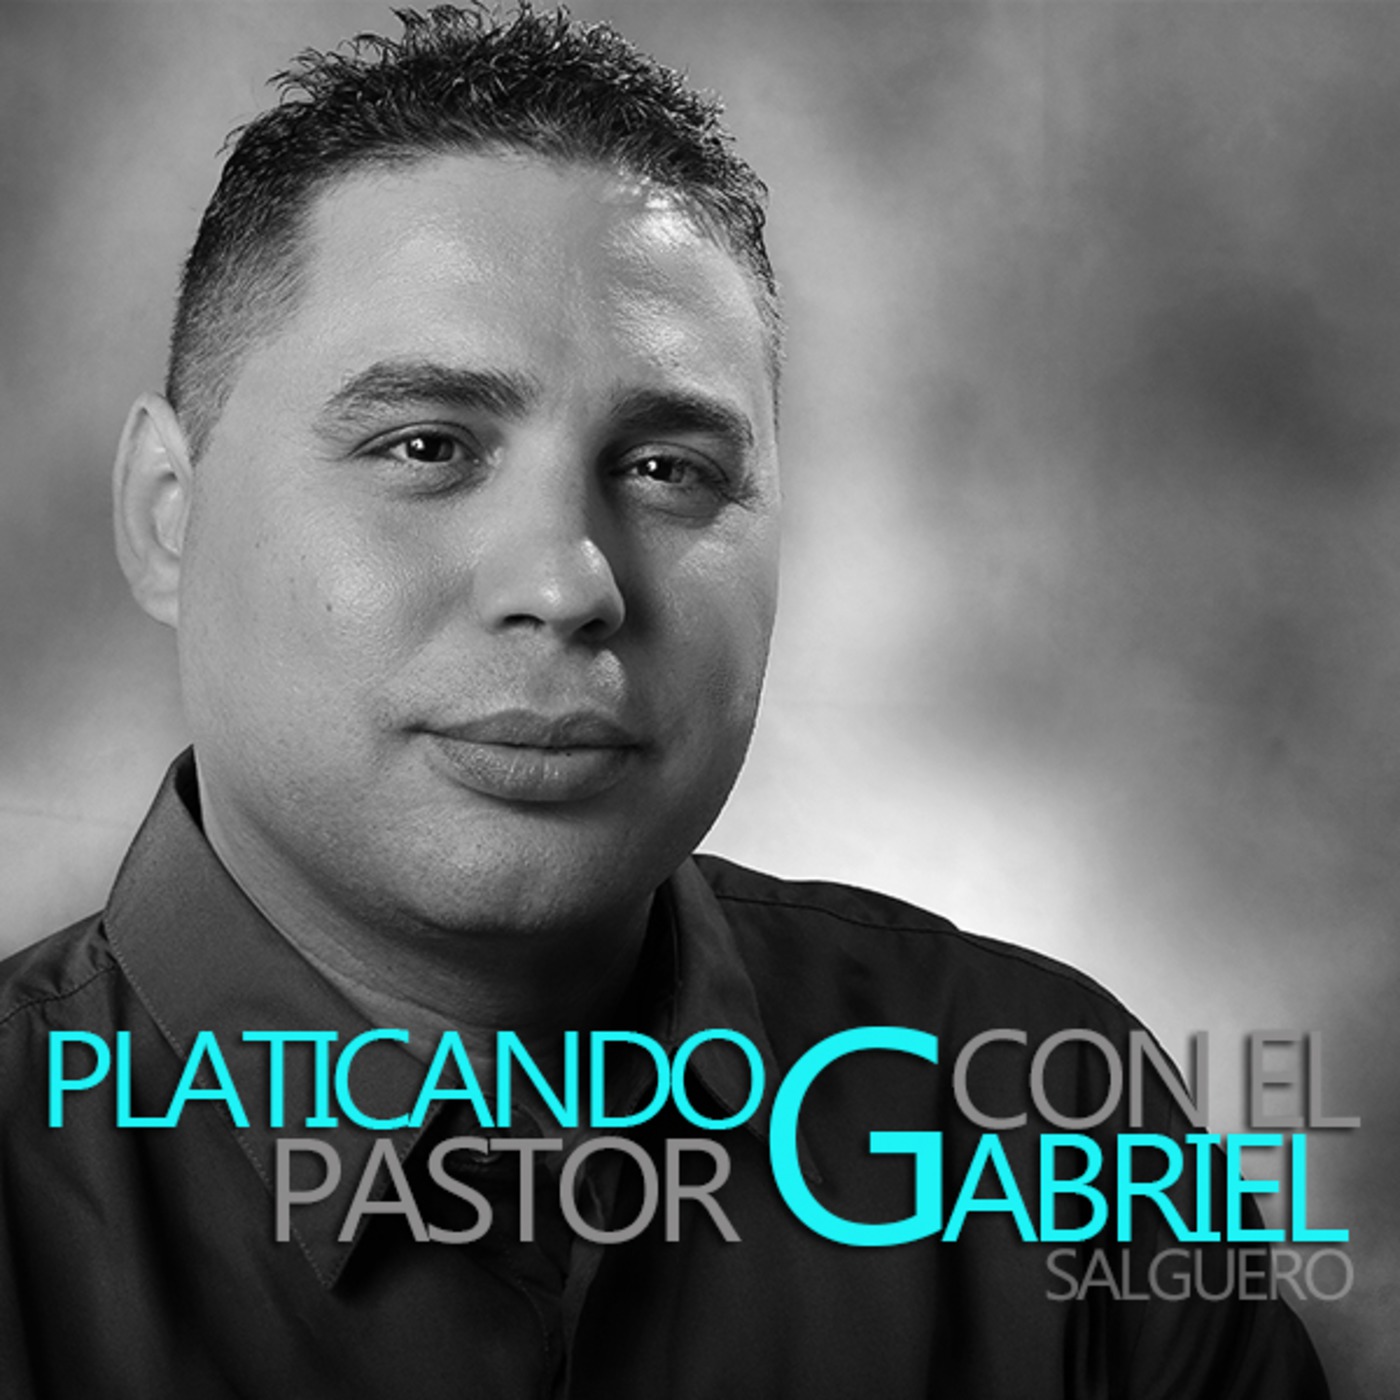 Amigos-Platicando con el Pastor Gabriel Salguero-013S